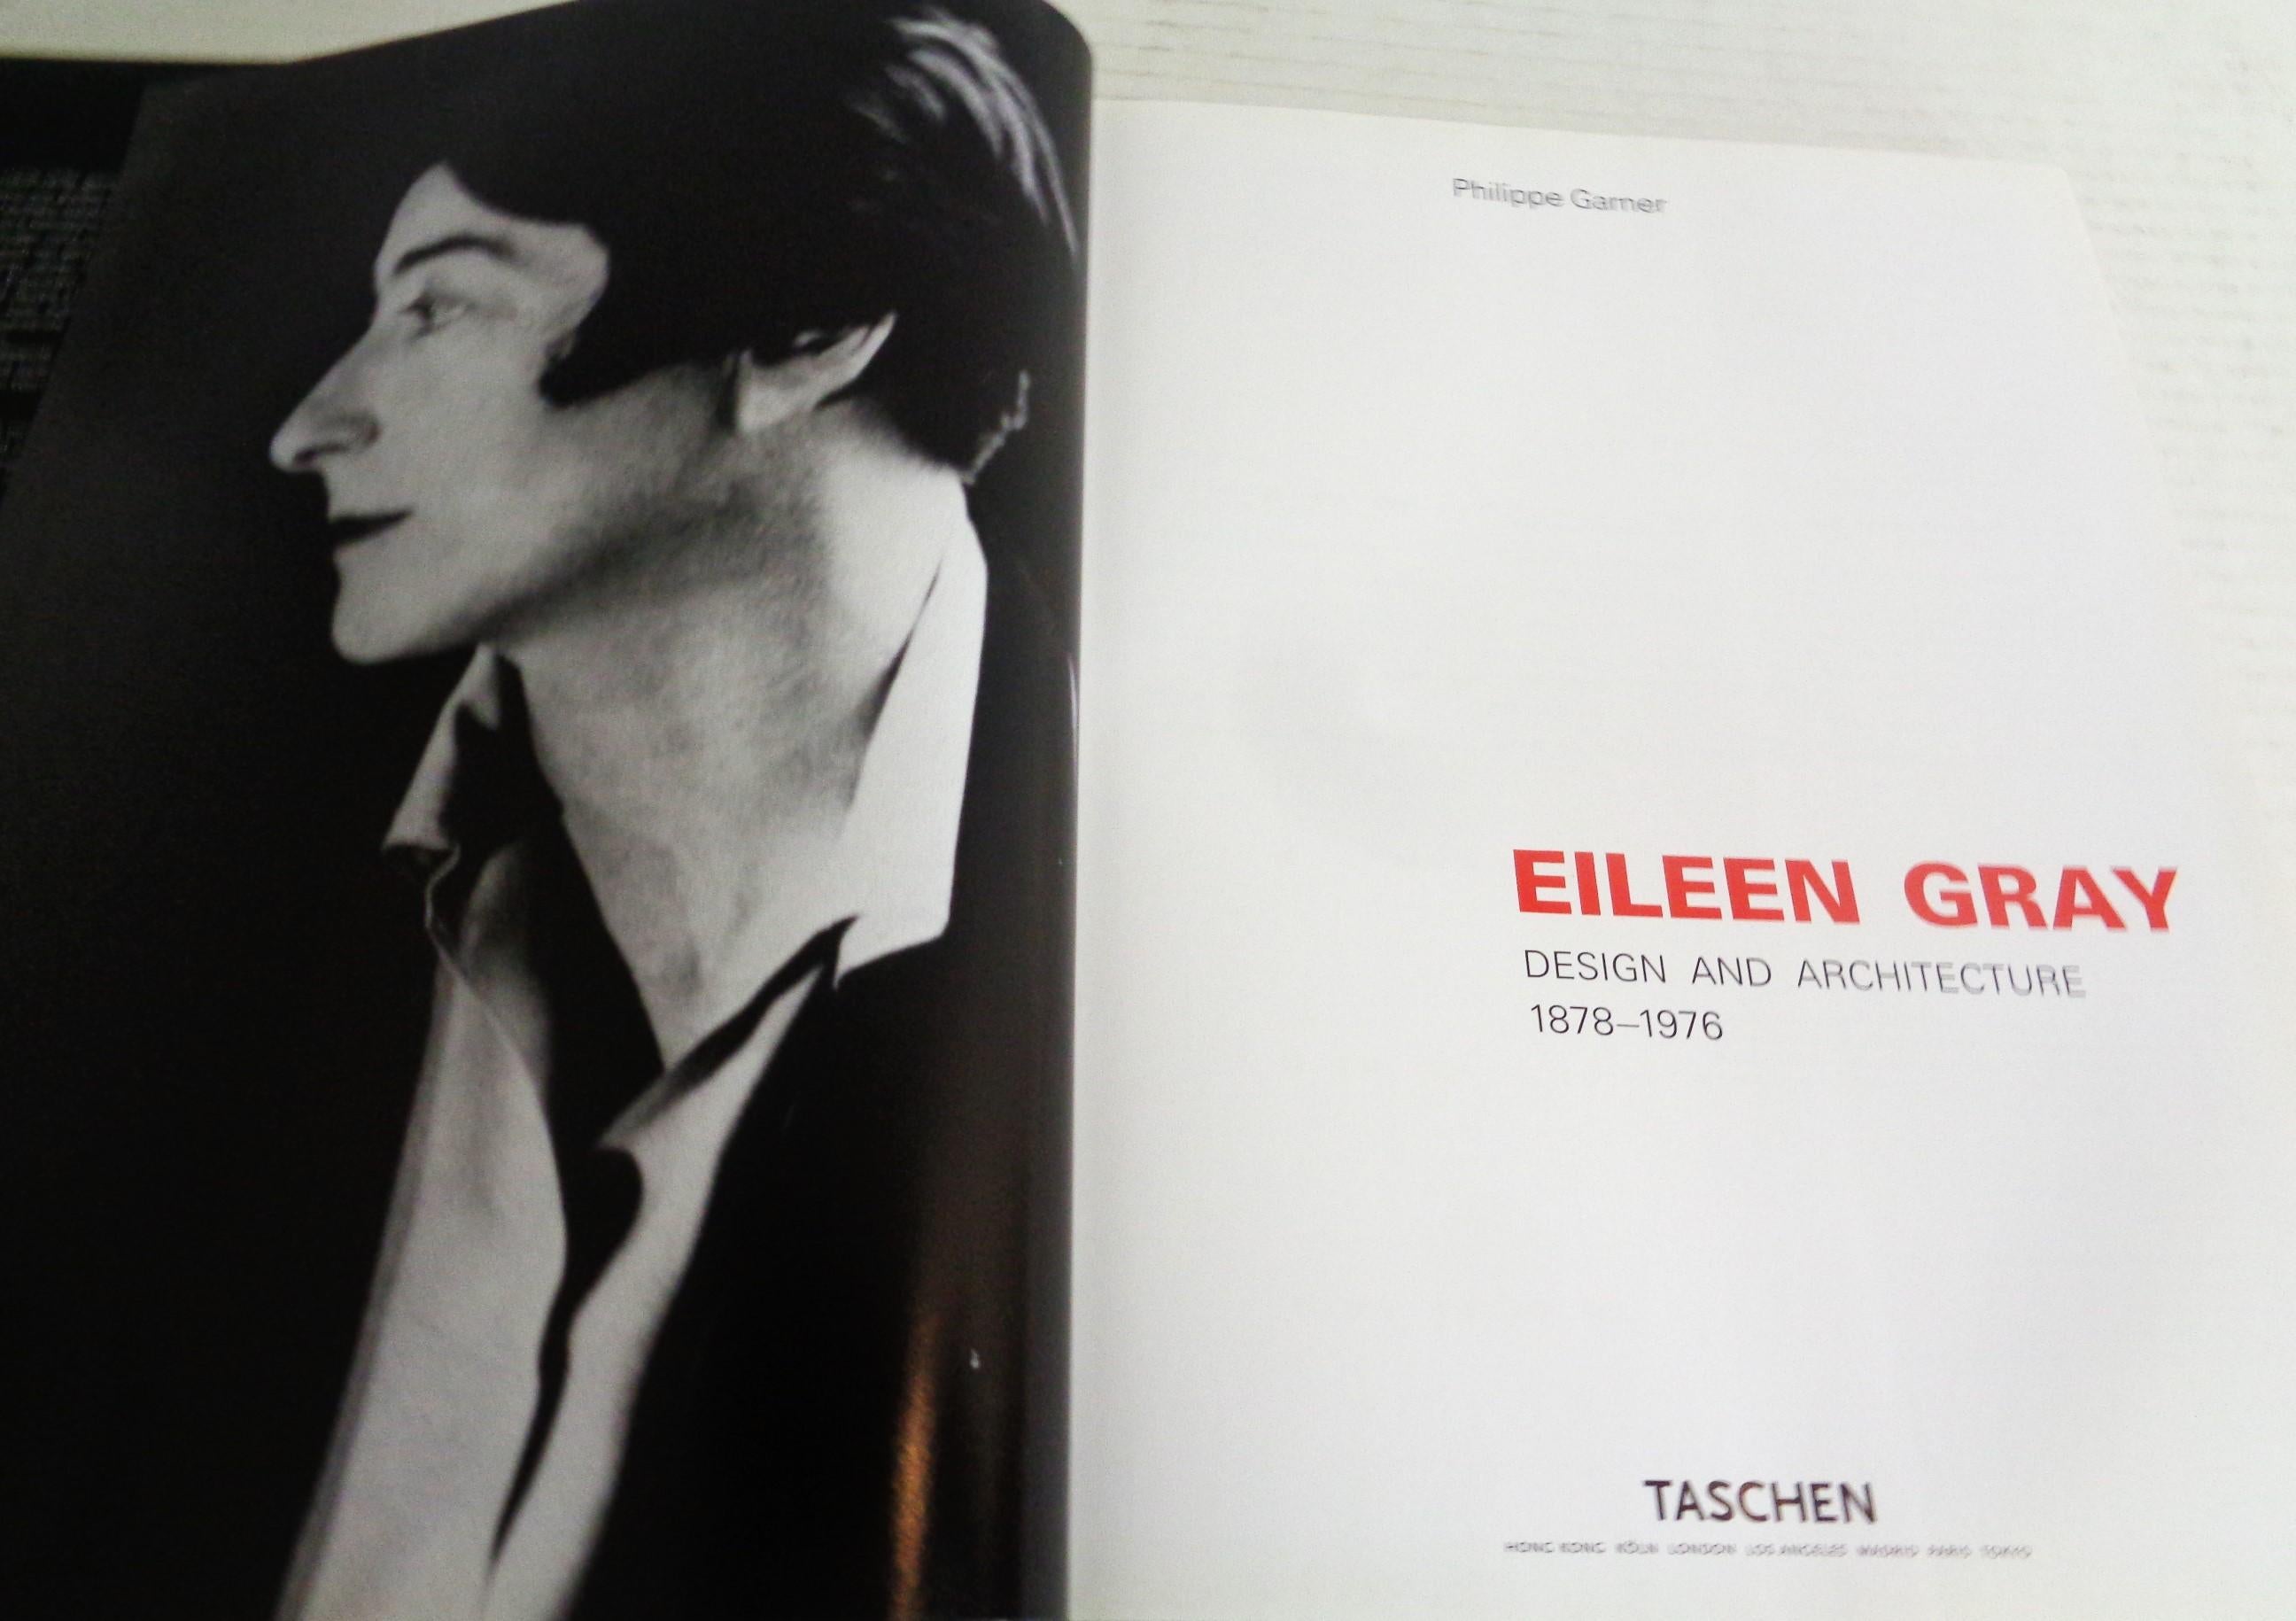 Eileen Gray - Design and Architecture - Garner, Philippe - 2006 Taschen 1